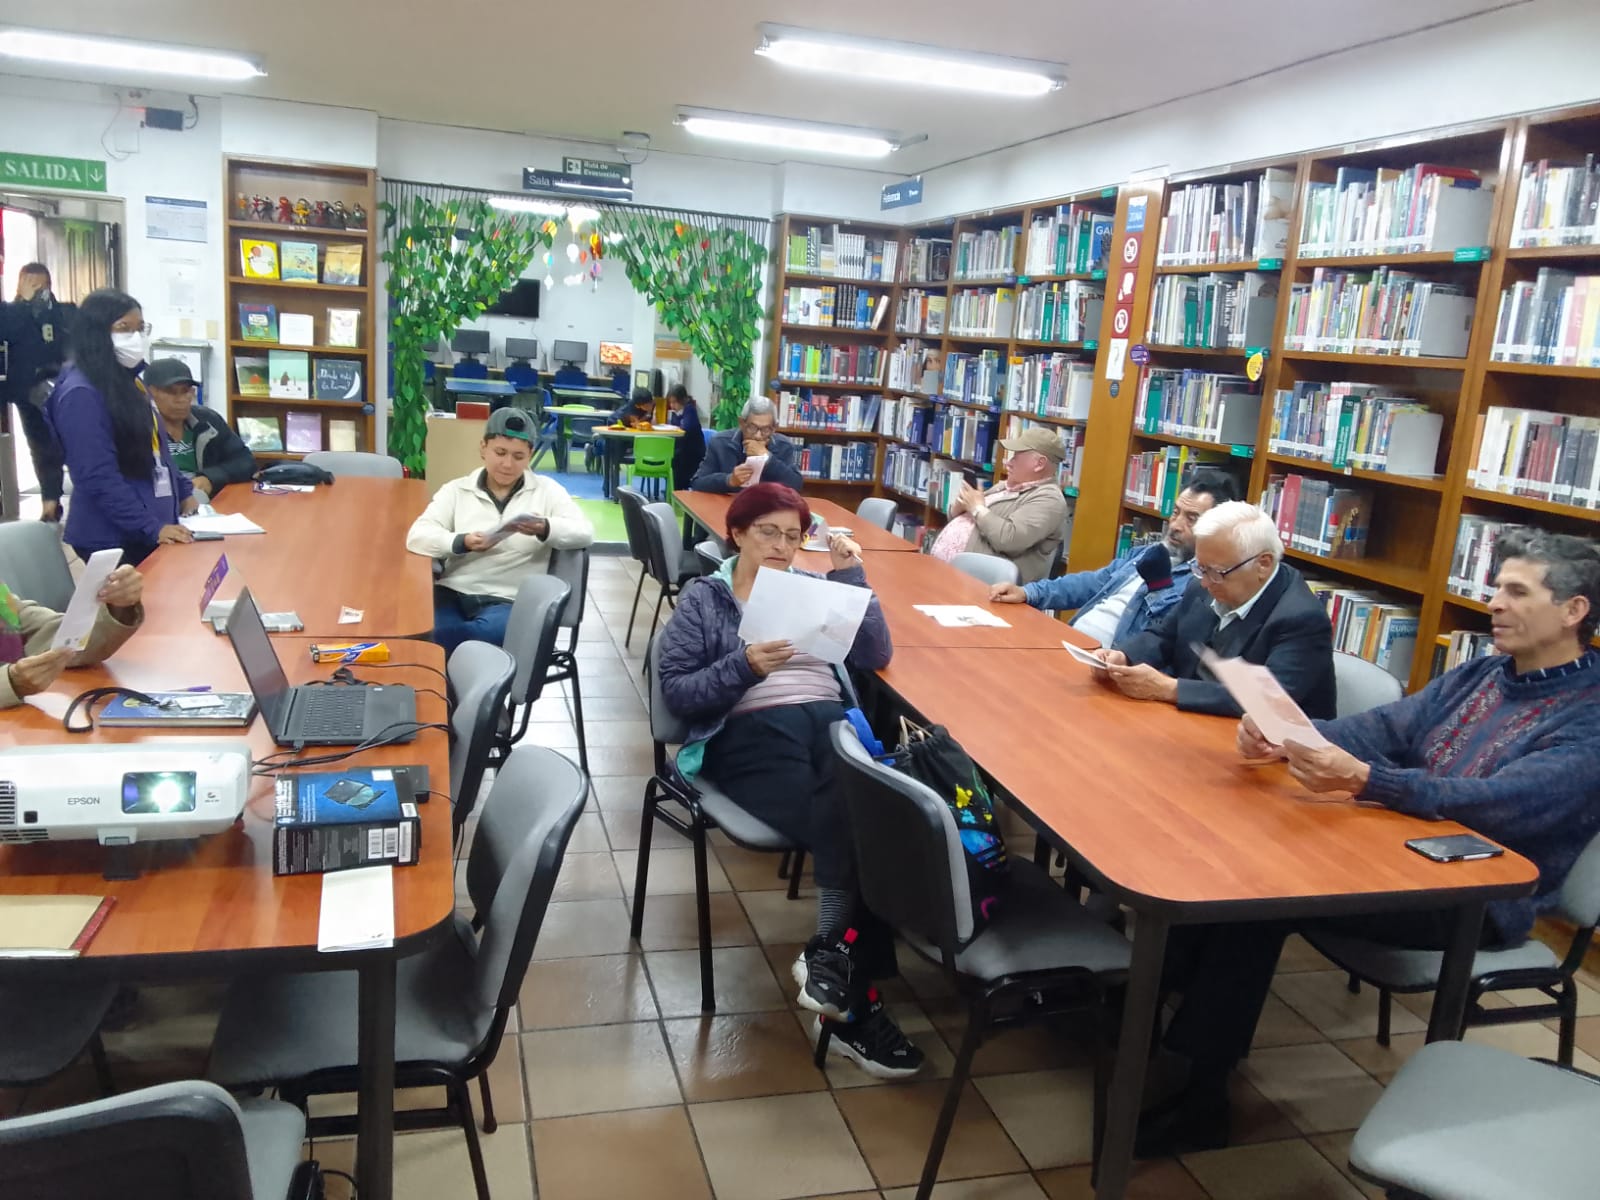 Adultos participando en actividad de la biblioteca